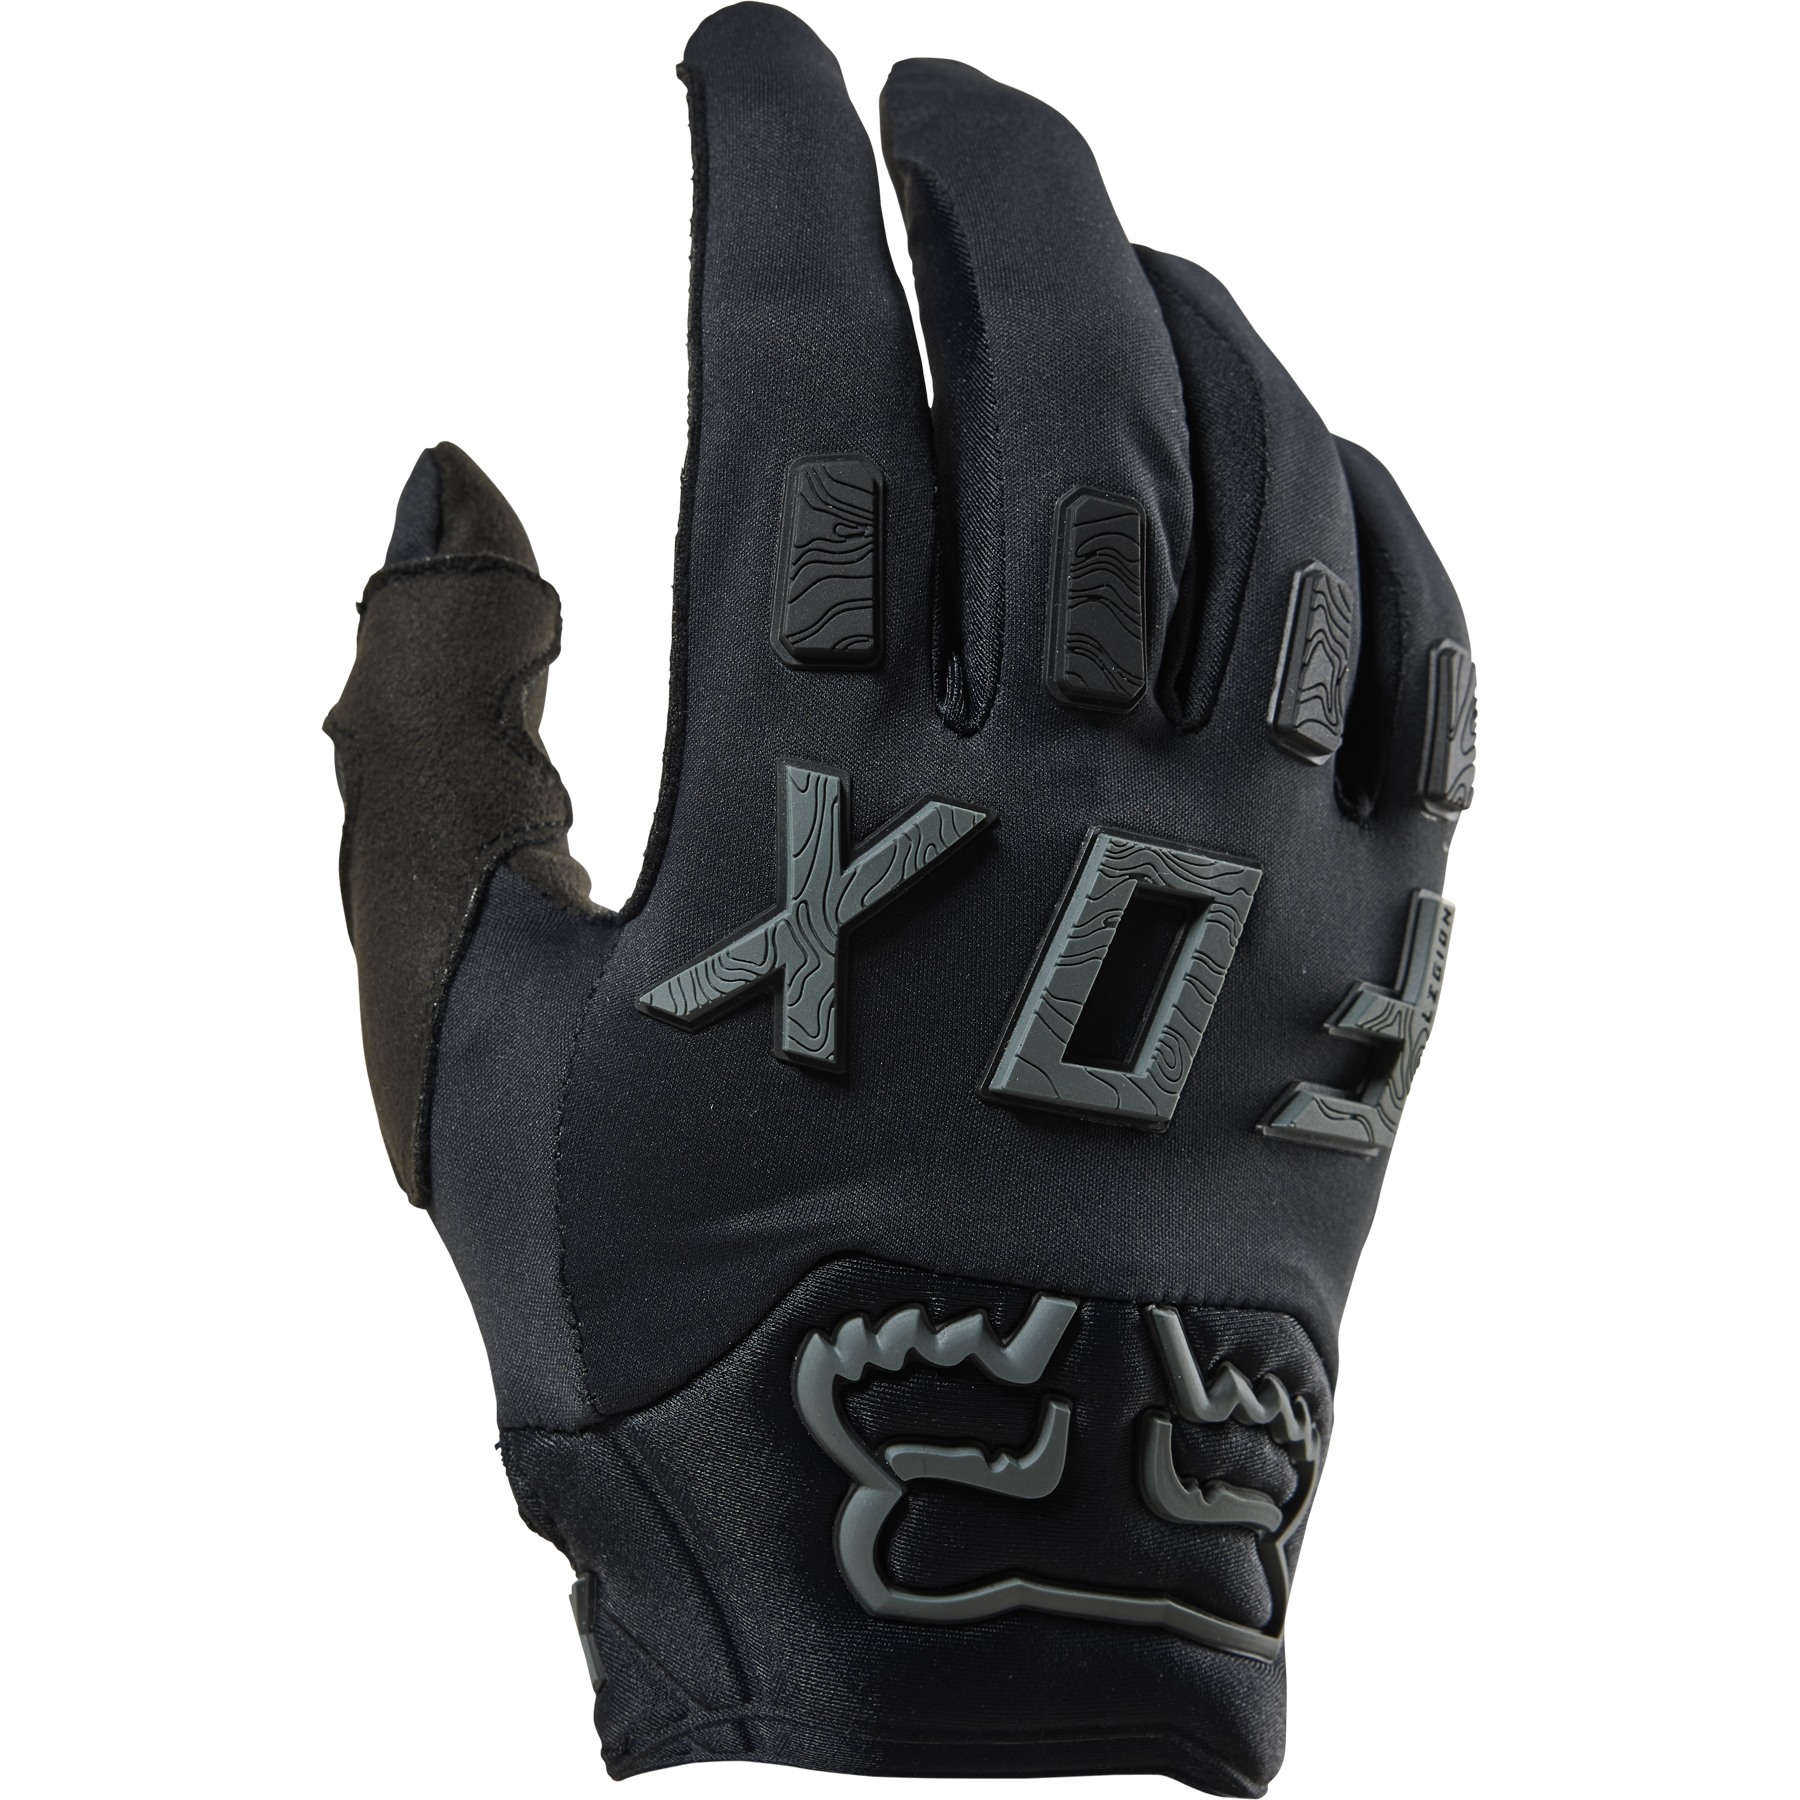 Produktbild von FOX Defend Wind Off Road Vollfingerhandschuh - schwarz